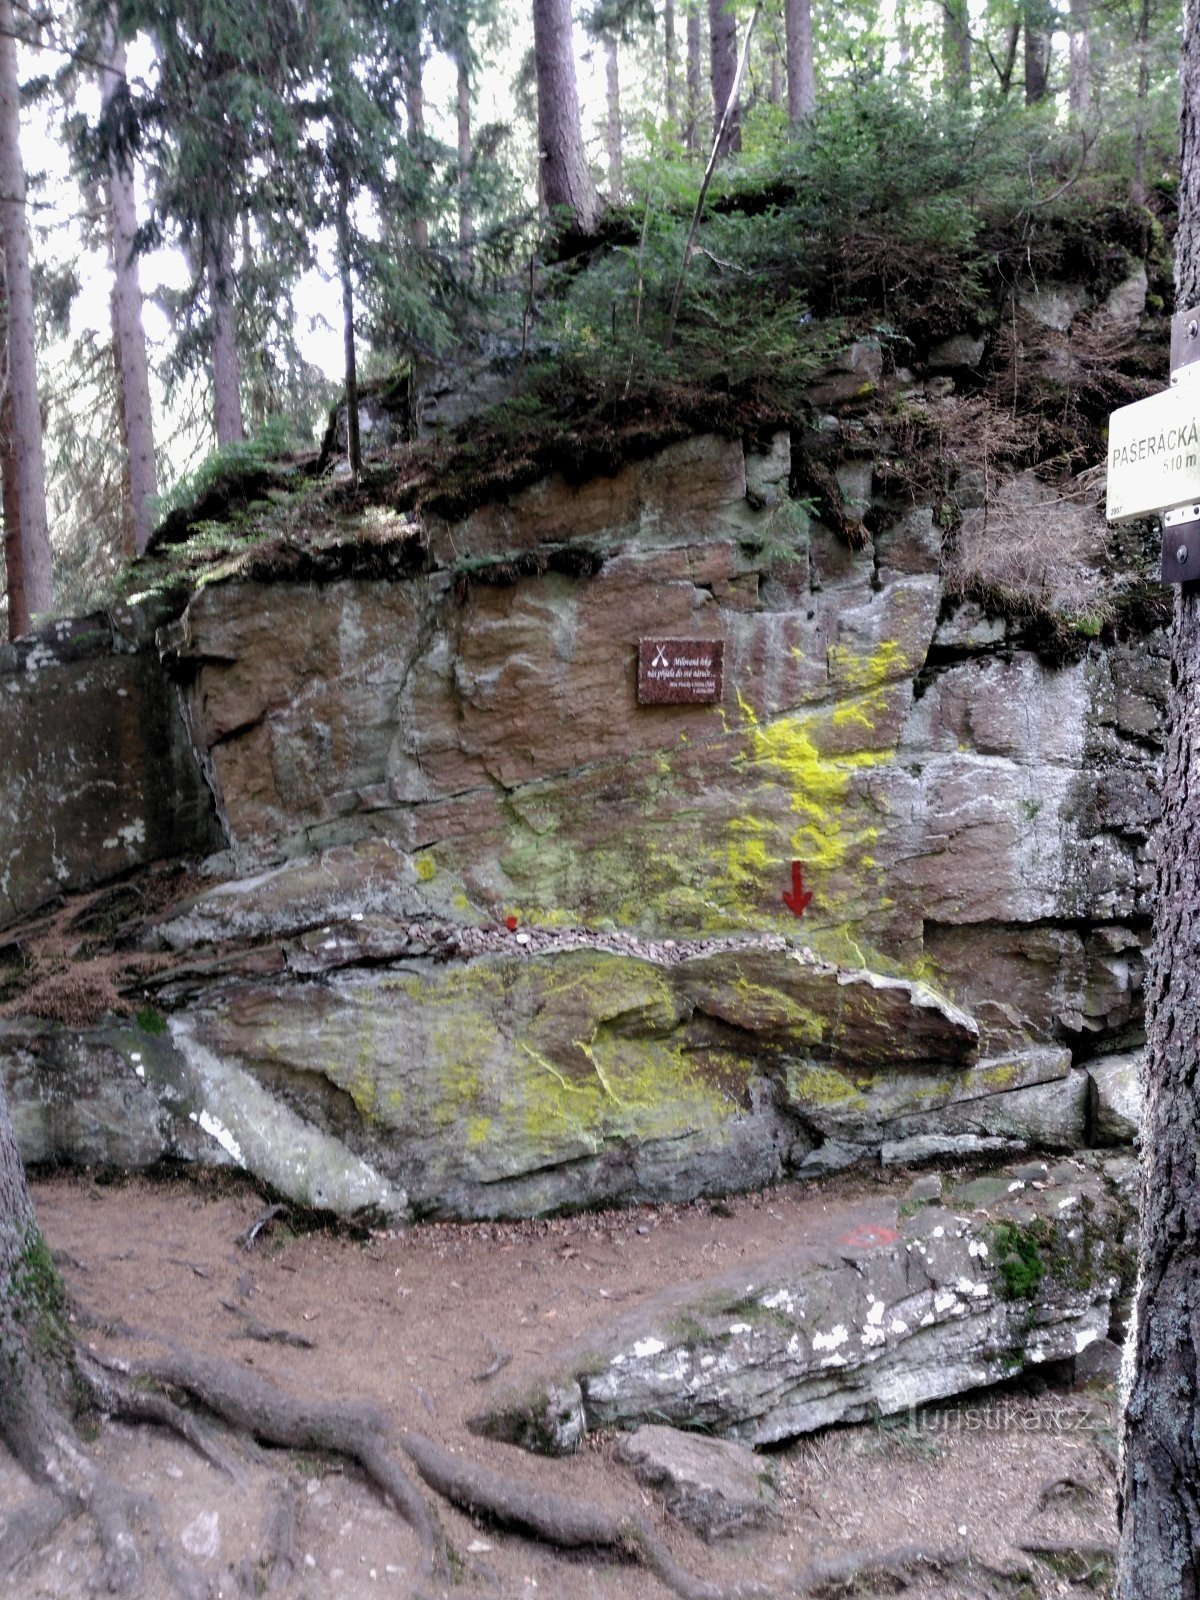 Pašeráckálávkaの岩